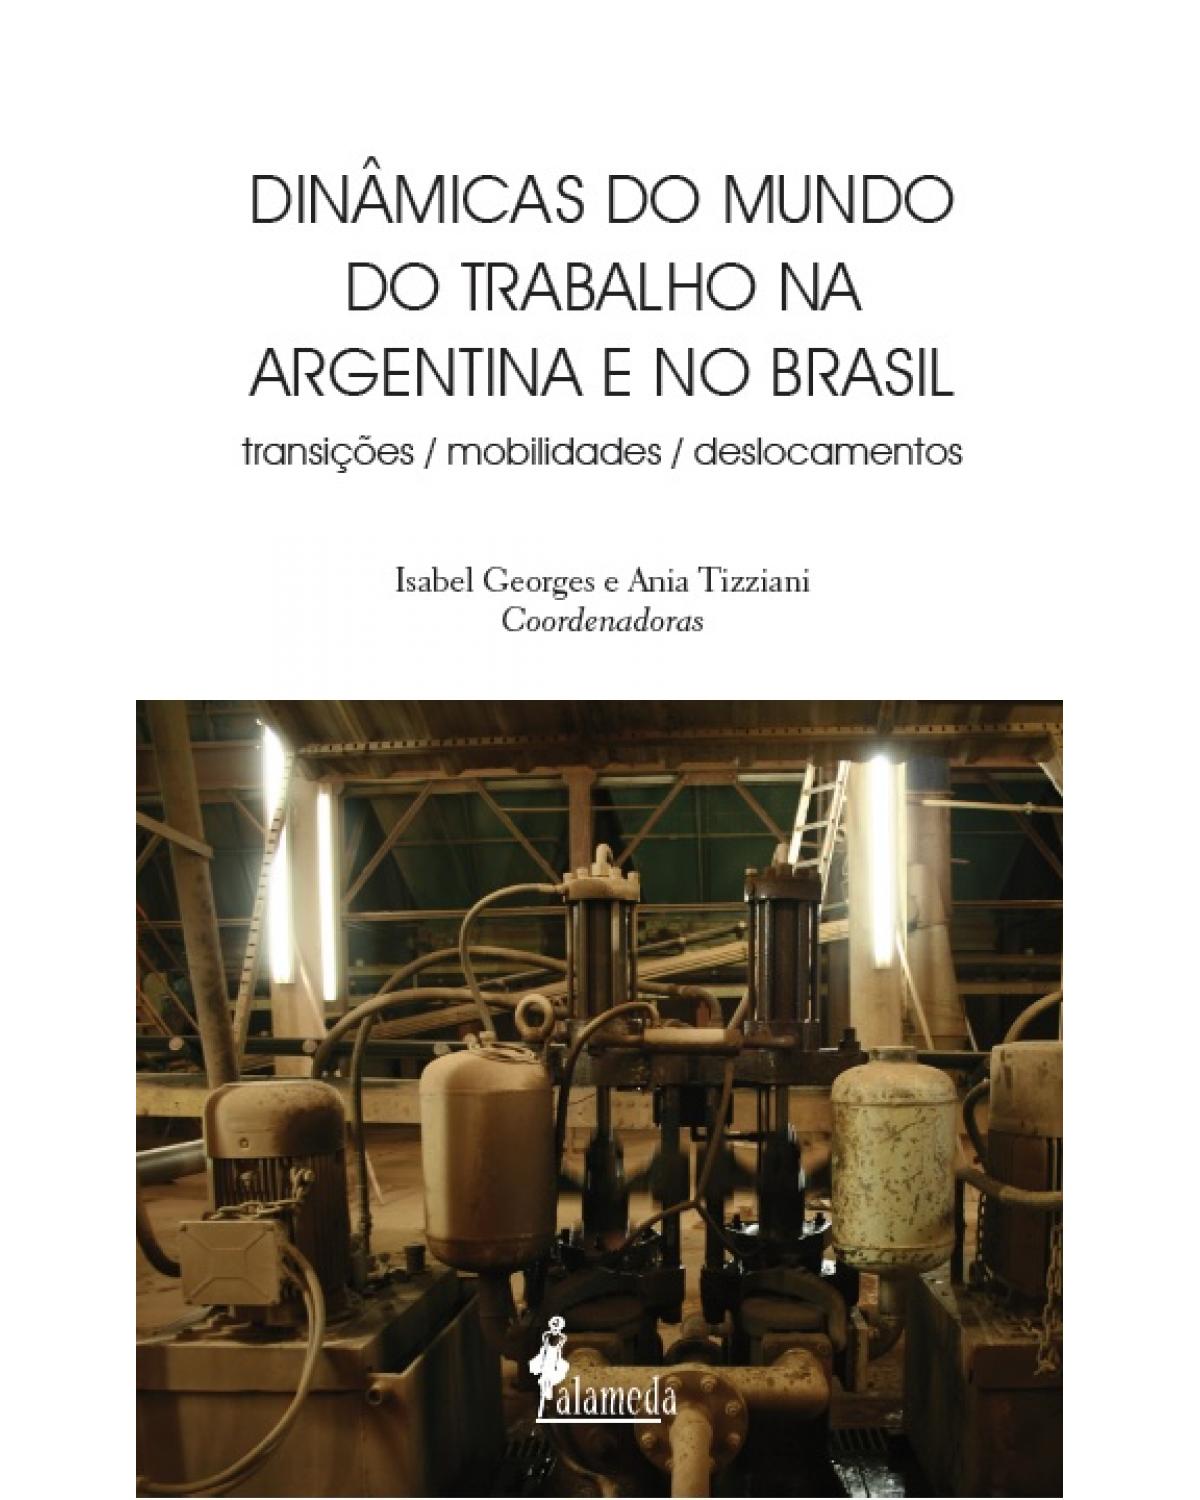 Dinâmicas do mundo do trabalho na Argentina e no Brasil - transições, mobilidades, deslocamentos - 1ª Edição | 2021